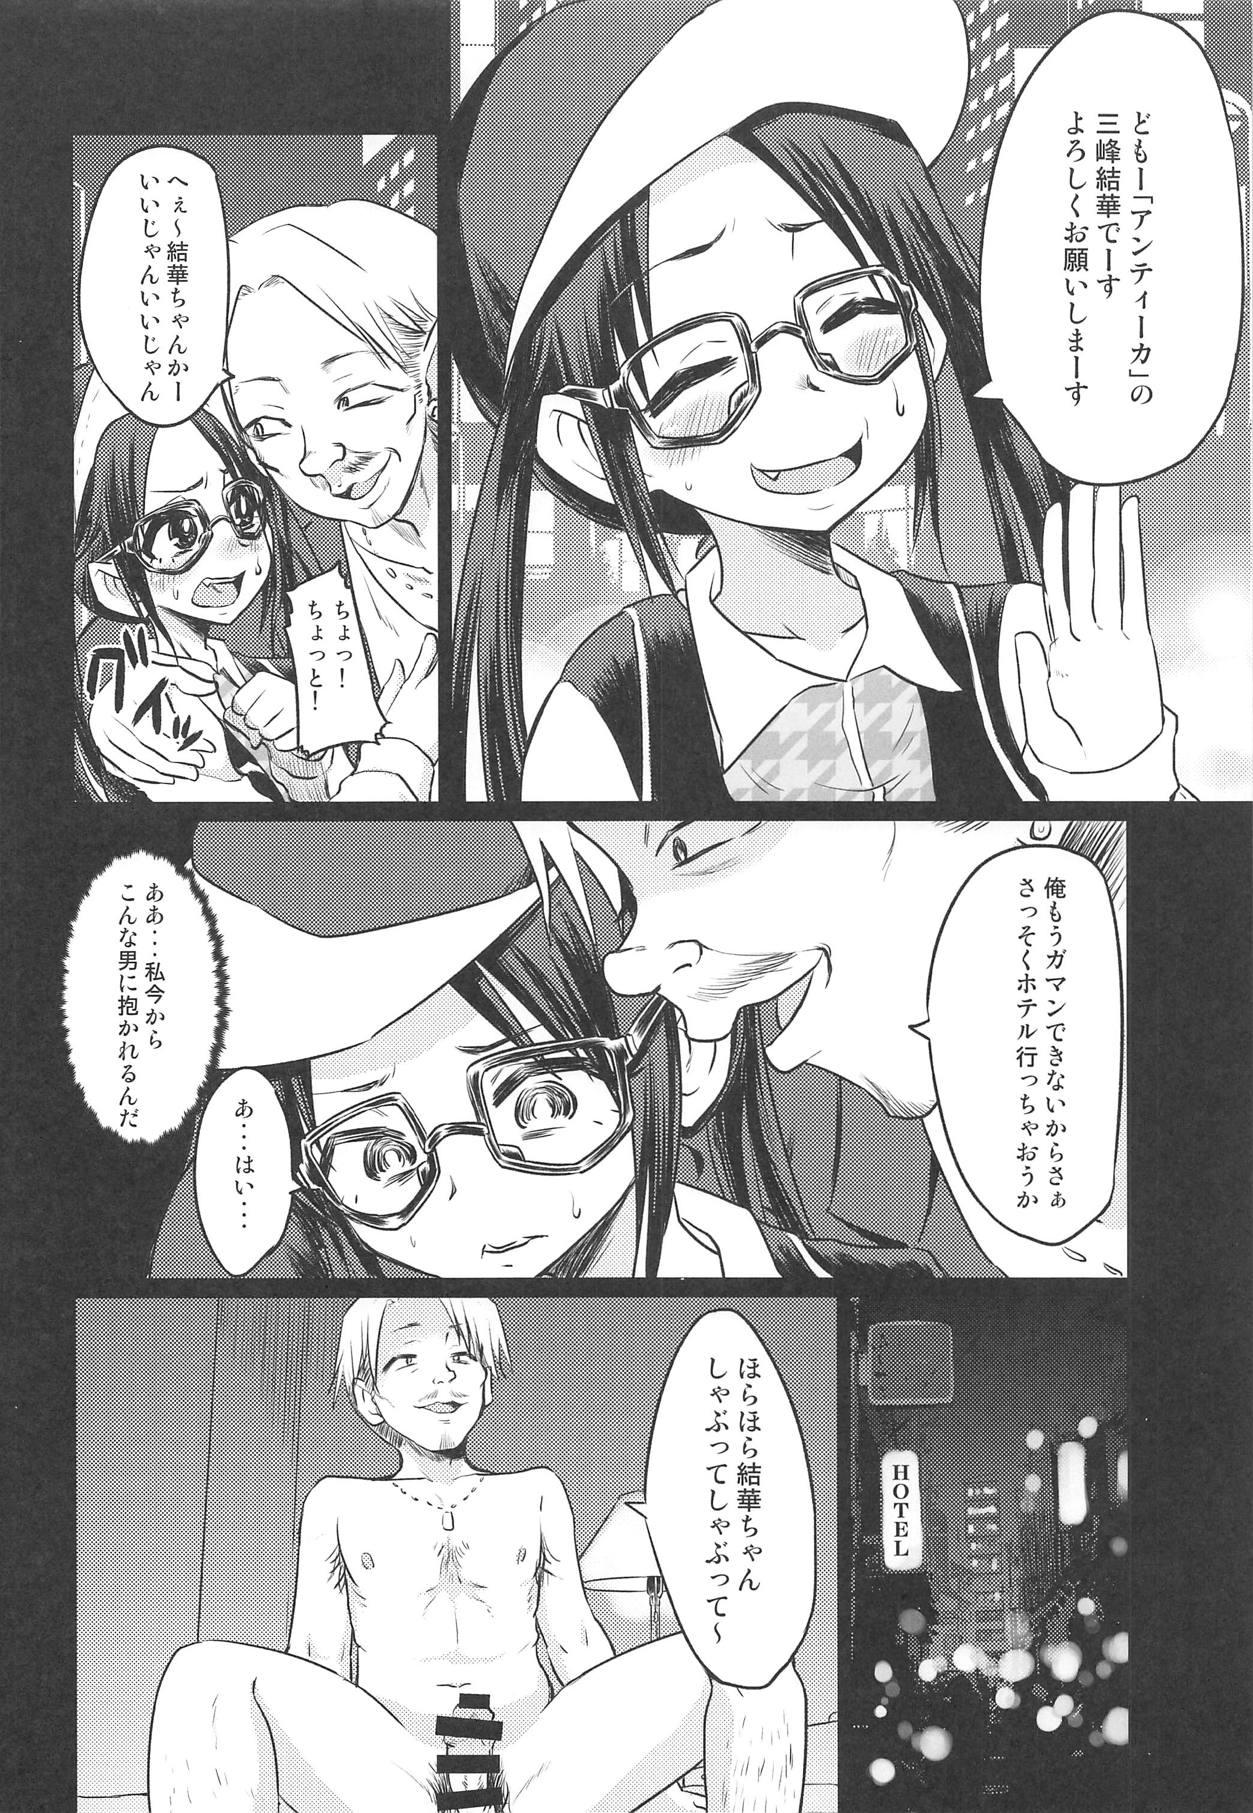 Chicks Mitsumine Yuika no Yoru no Eigyou Katsudou Kiroku. - The idolmaster Cartoon - Page 5